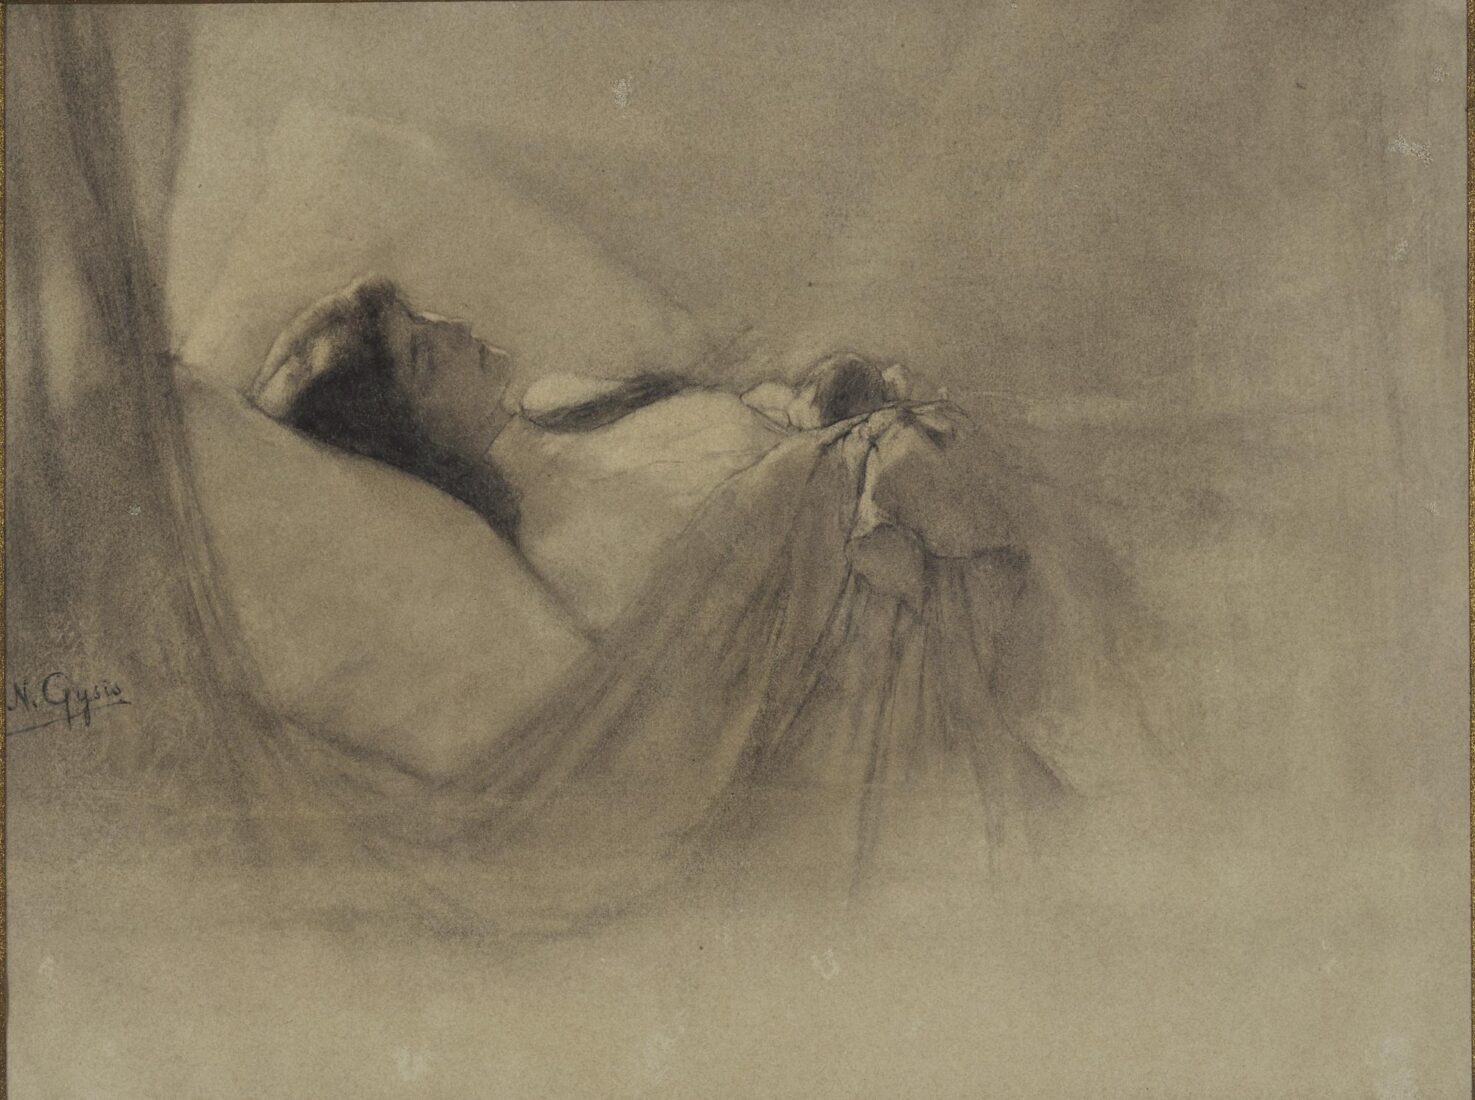 Philippos Martha’s Wife on her Deathbed - Gyzis Nikolaos